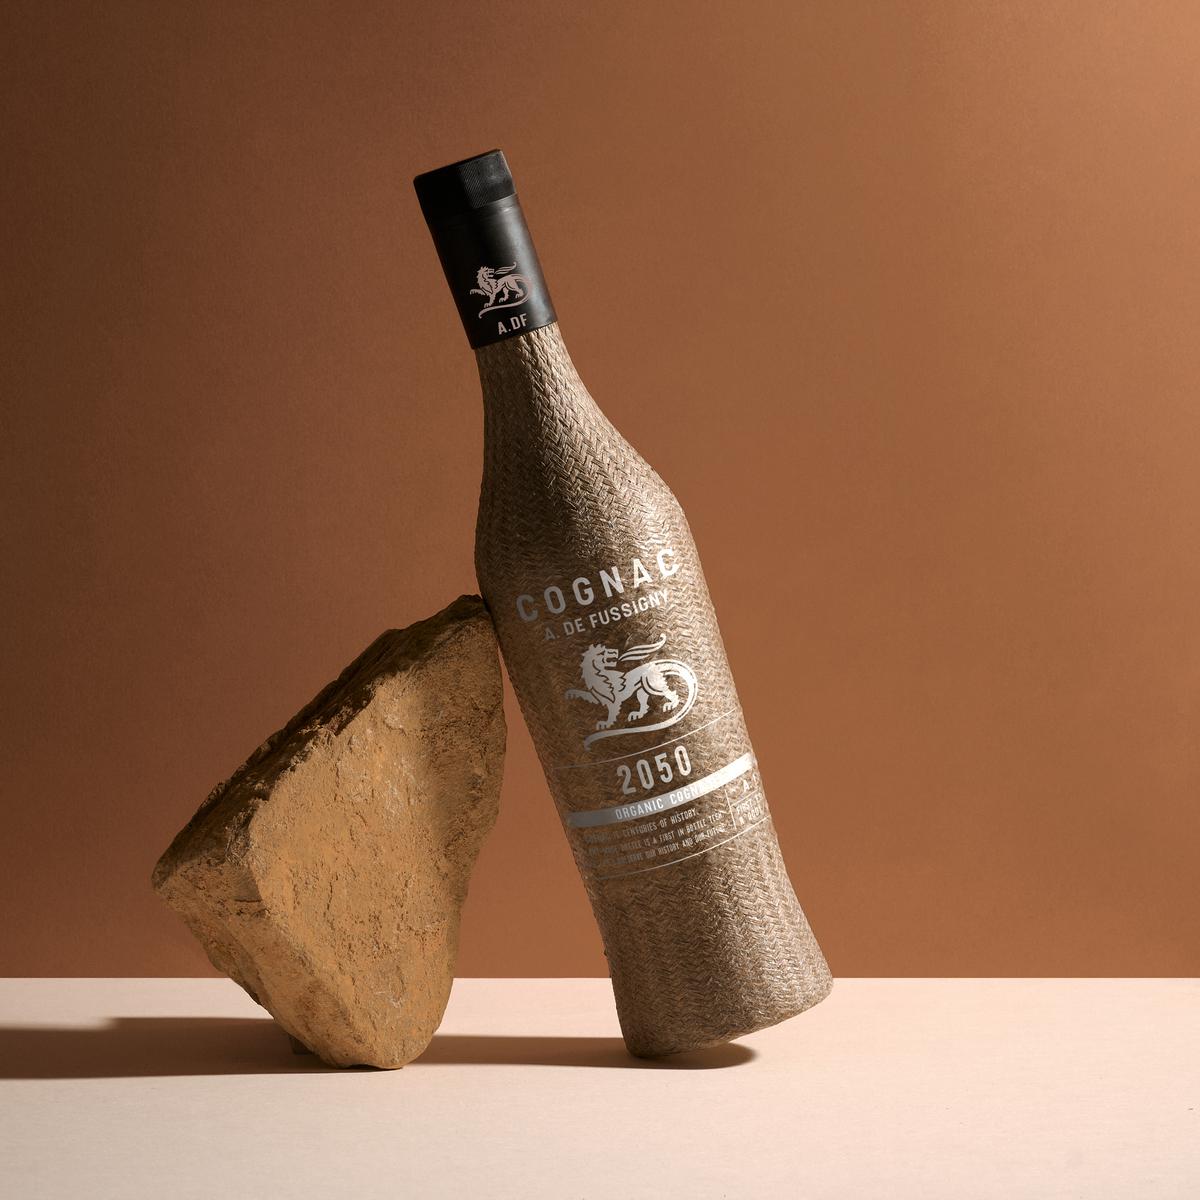 A de Fussigny 2050 Organic Cognac In Plant-Based Bottle bottle